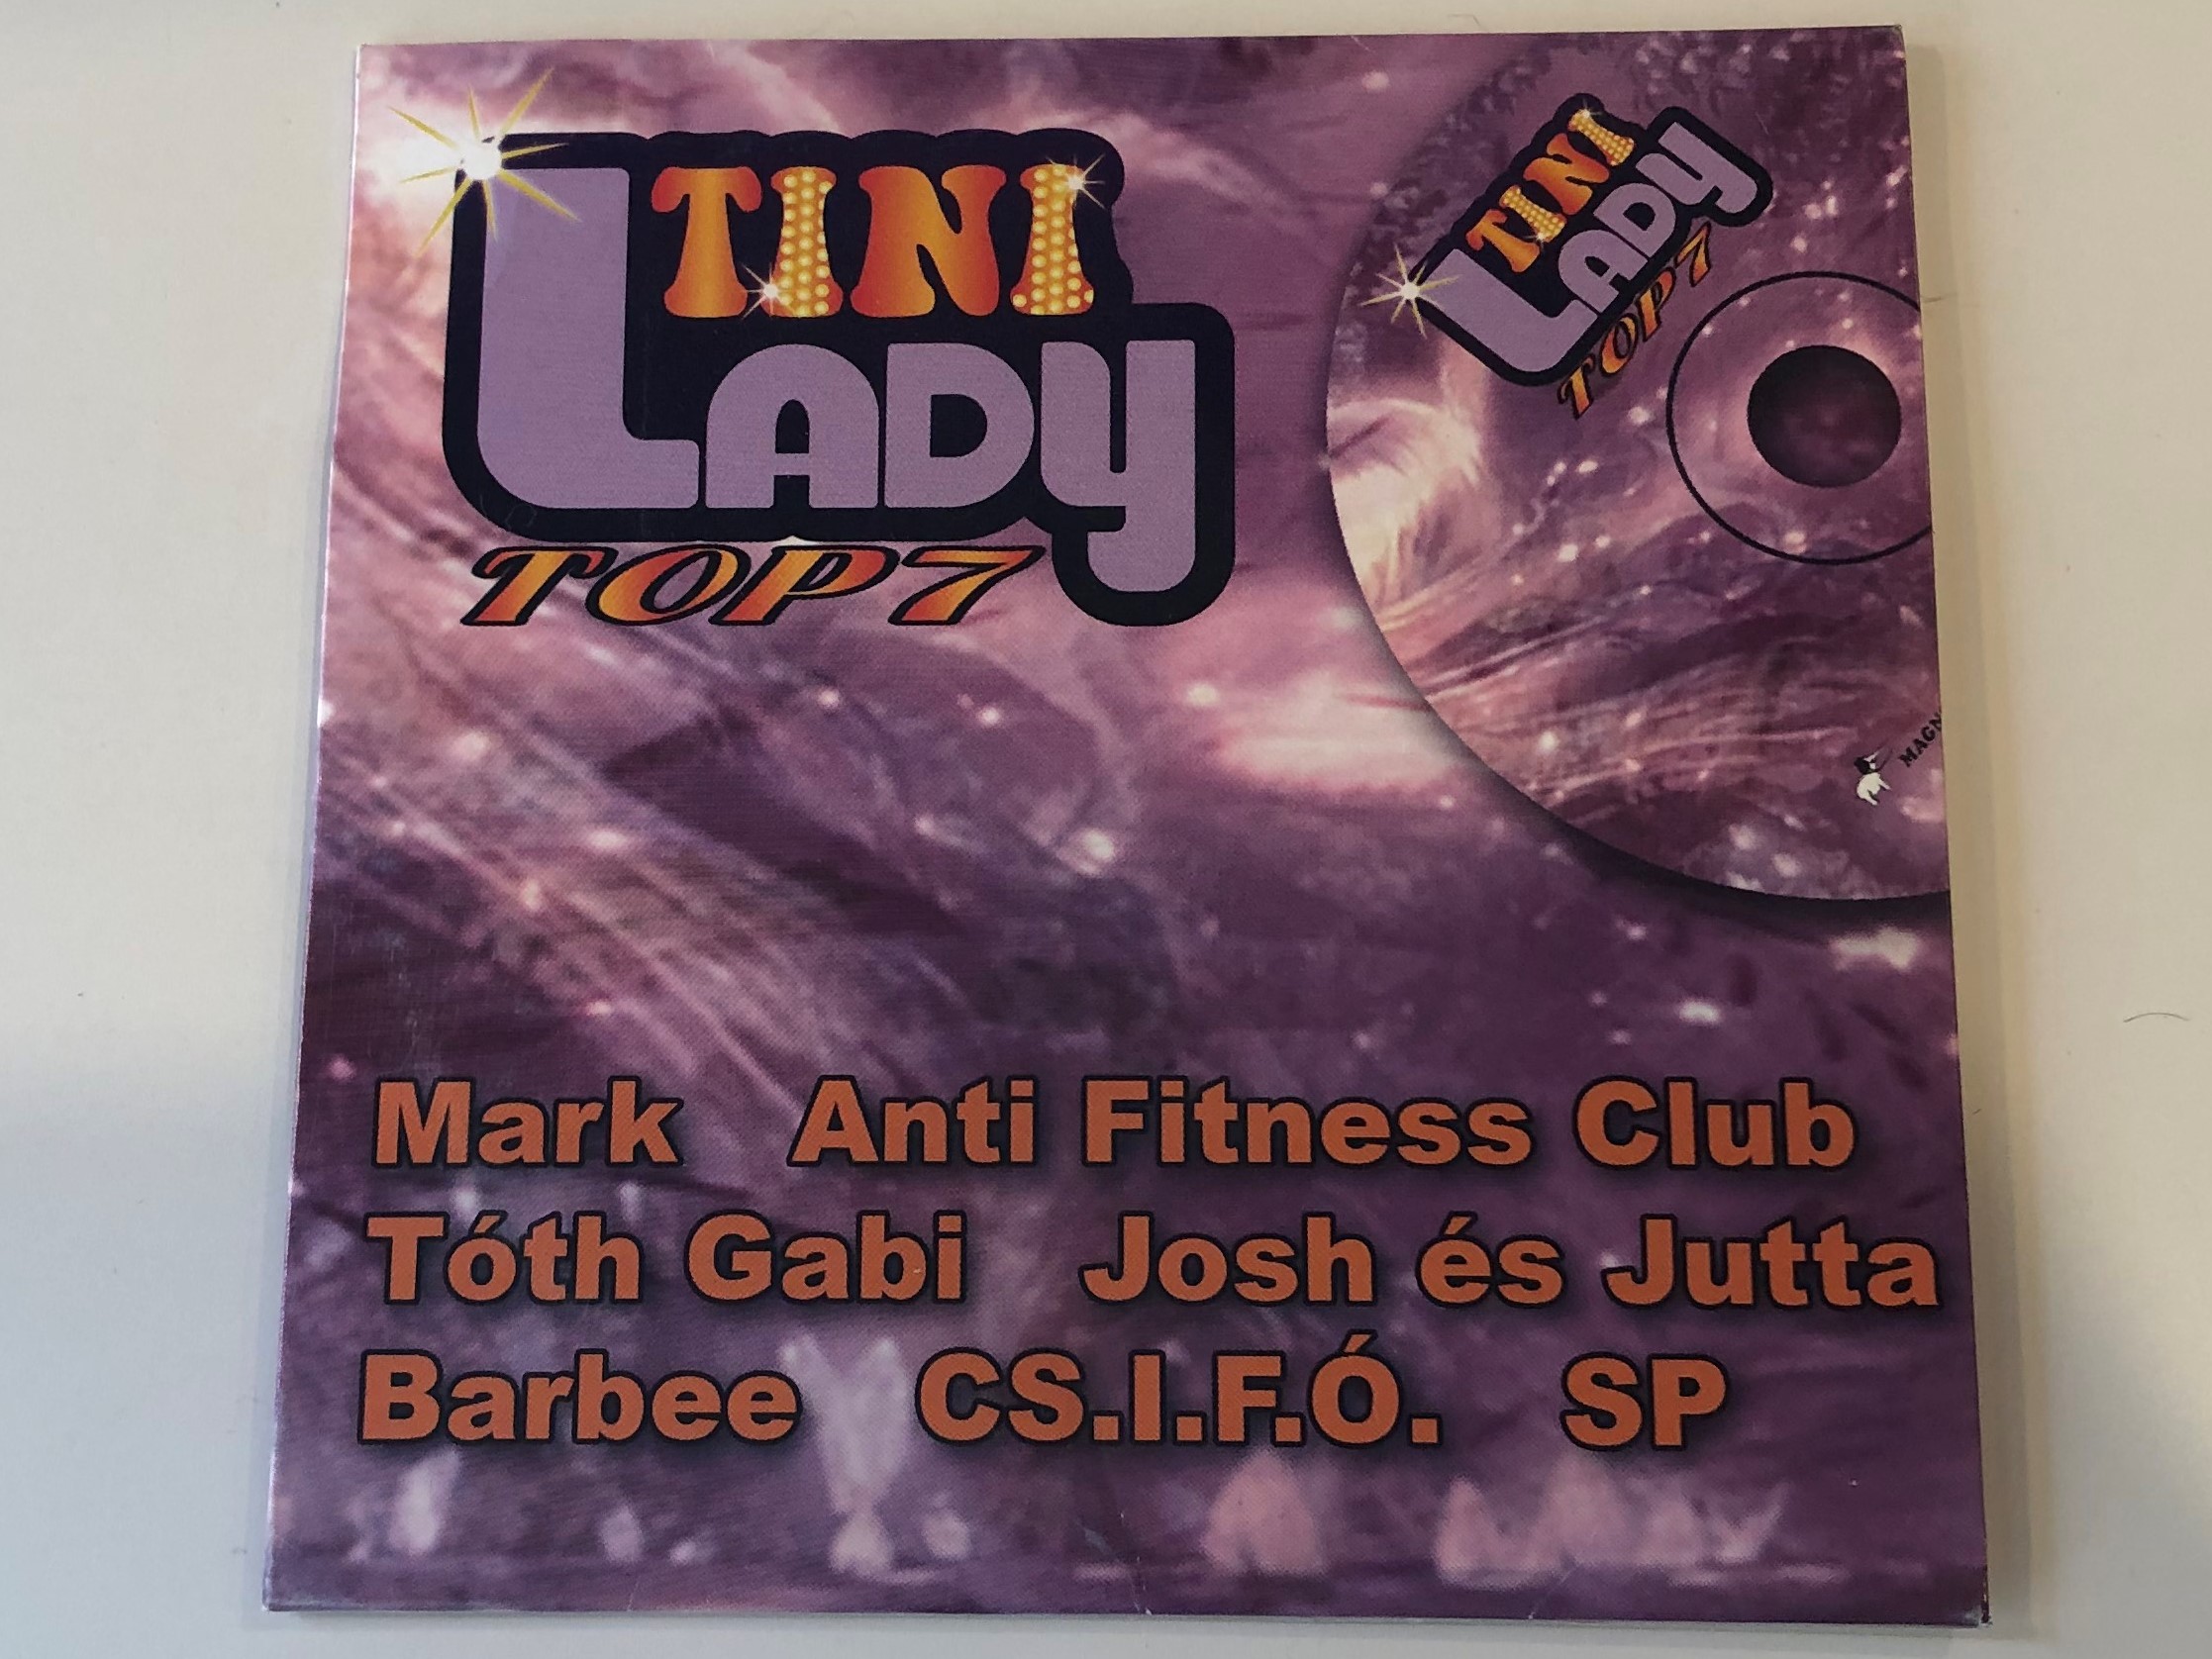 tini-lady-top-7-mark-anti-fitness-club-t-th-gabi-josh-s-jutta-barbee-cs.i.f.-.-sp-magneoton-audio-cd-2009-5051865593225-1-.jpg